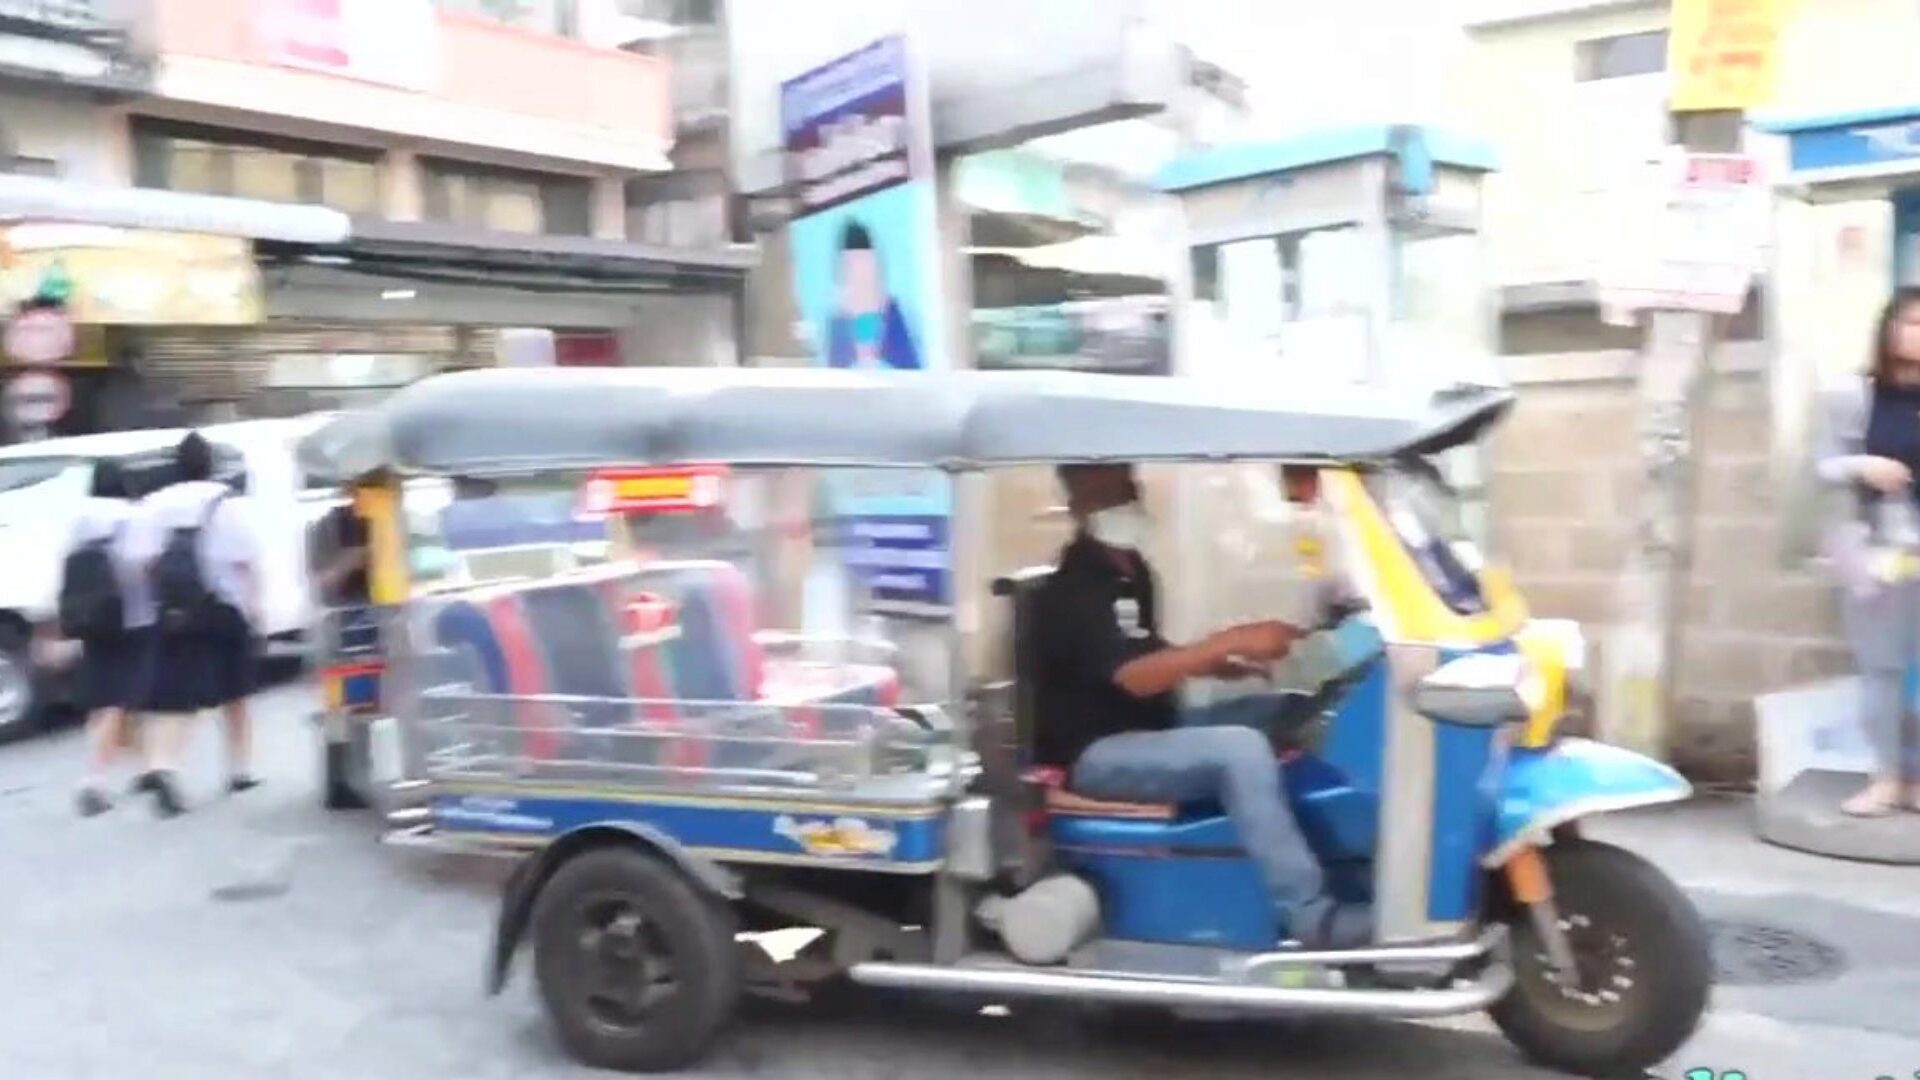 tuktukpatrol stora bröst thailändsk brud plockas upp och knullas dumt